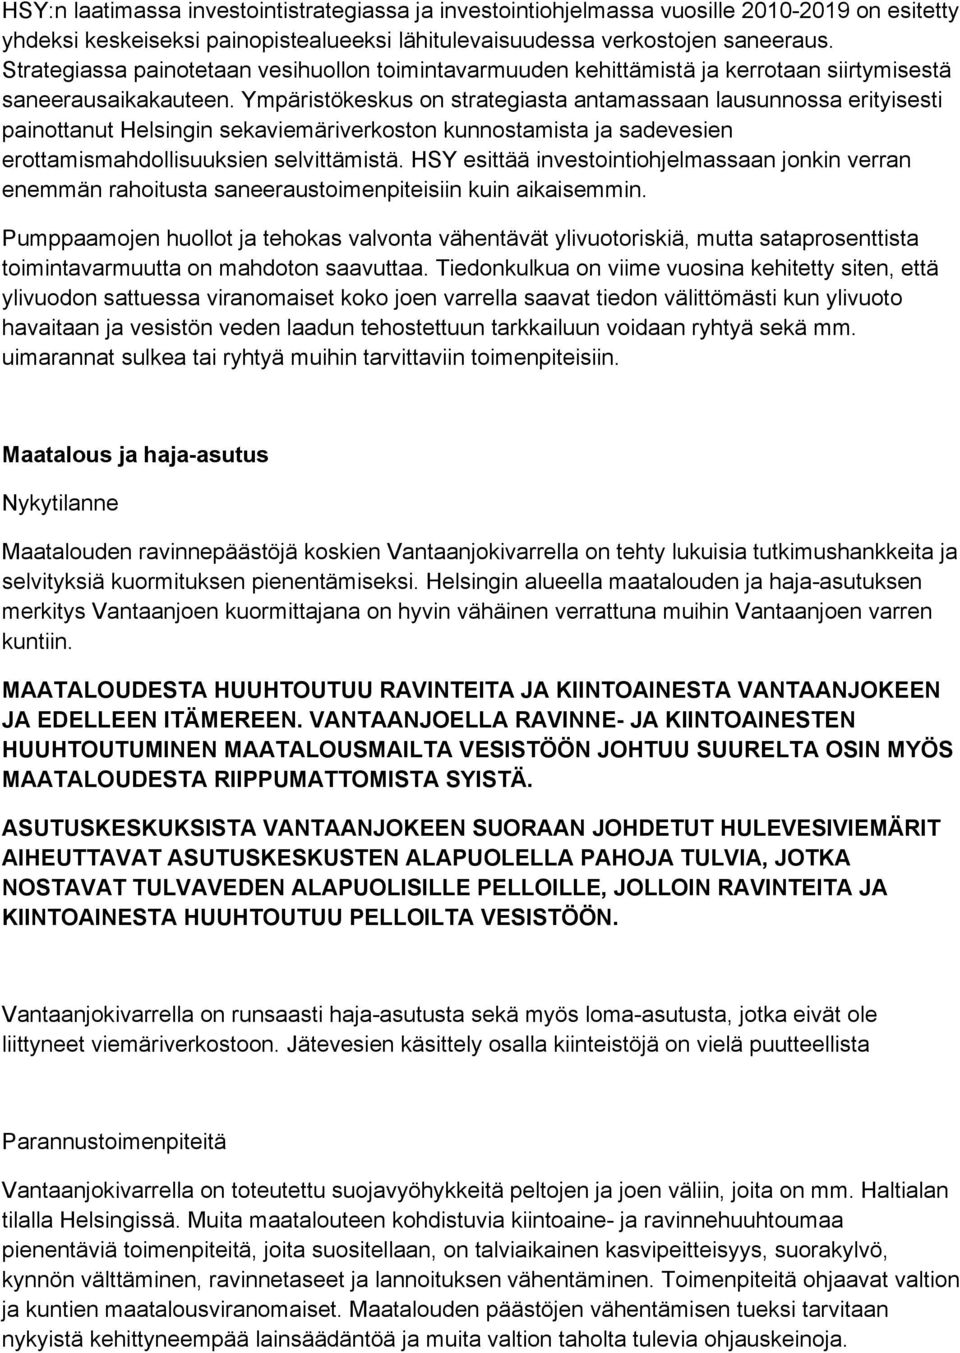 Ympäristökeskus on strategiasta antamassaan lausunnossa erityisesti painottanut Helsingin sekaviemäriverkoston kunnostamista ja sadevesien erottamismahdollisuuksien selvittämistä.